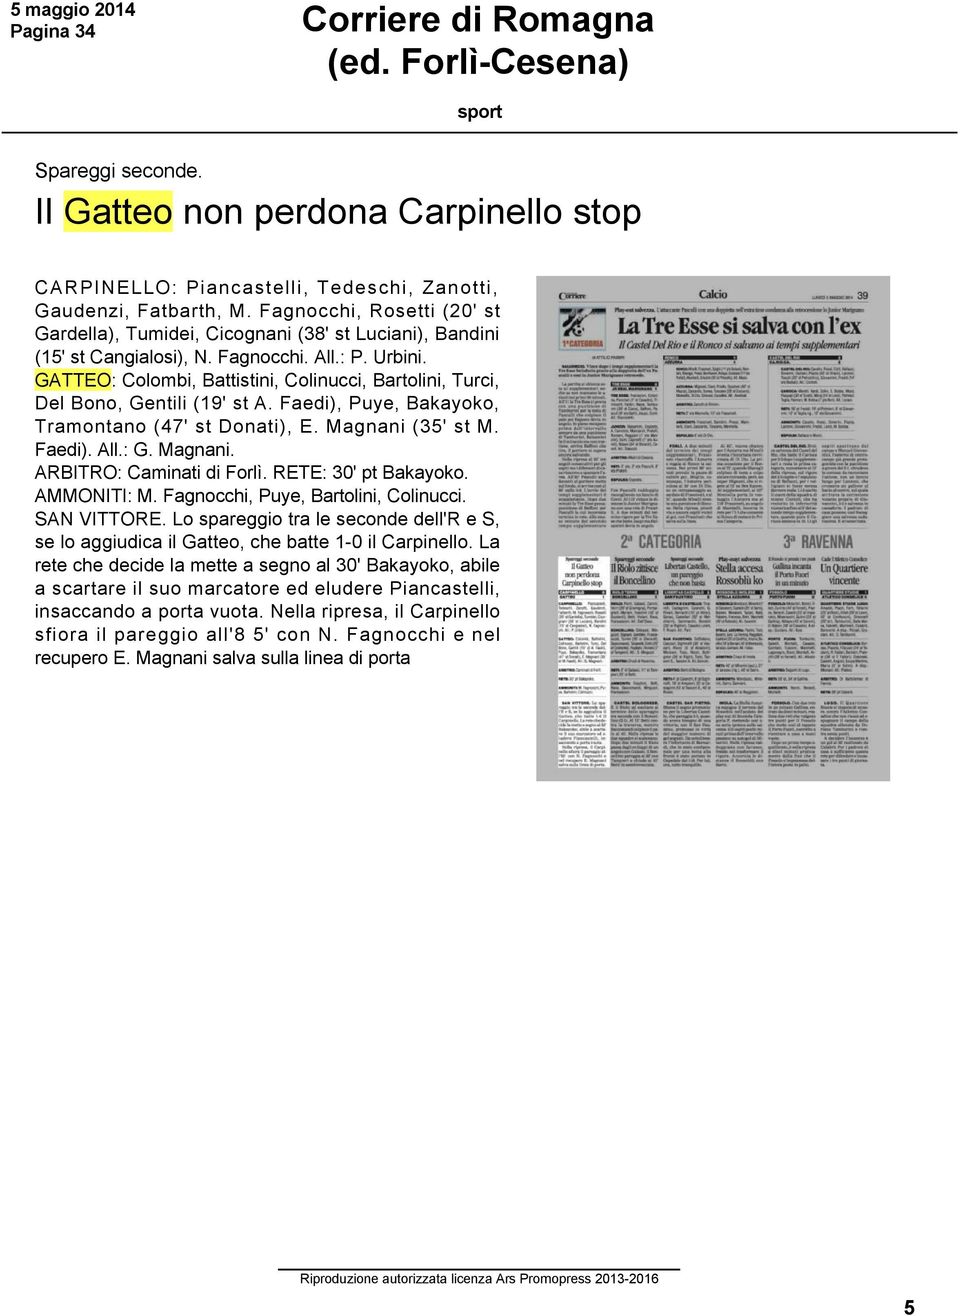 GATTEO: Colombi, Battistini, Colinucci, Bartolini, Turci, Del Bono, Gentili (19' st A. Faedi), Puye, Bakayoko, Tramontano (47' st Donati), E. Magnani (35' st M. Faedi). All.: G. Magnani. ARBITRO: Caminati di Forlì.